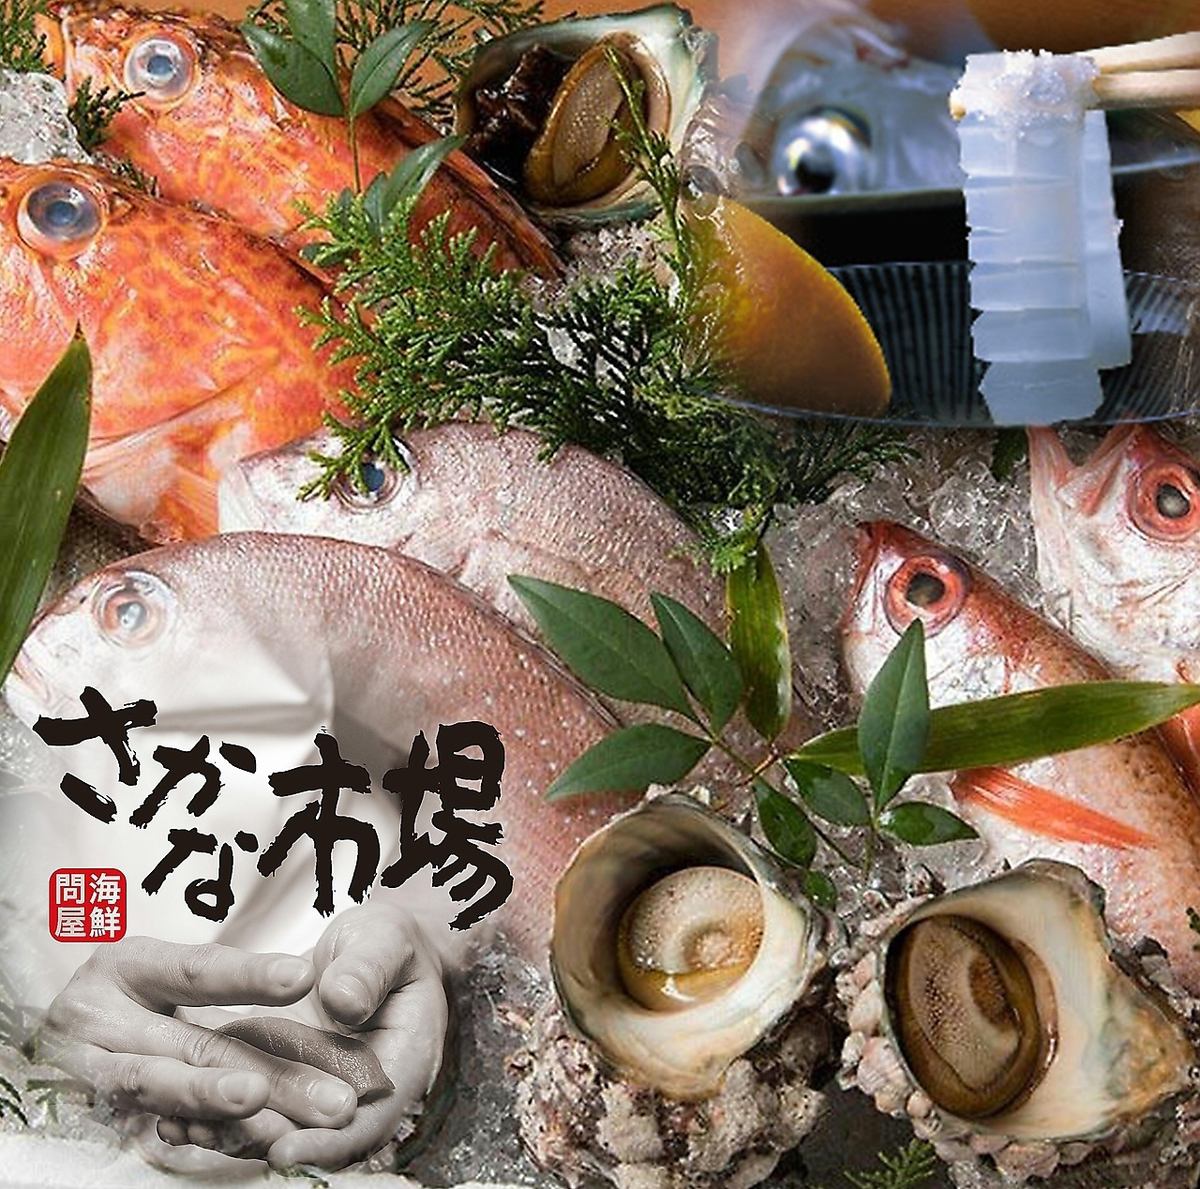 魚市特產“魷魚的生魚片”等美味魚的價格實惠